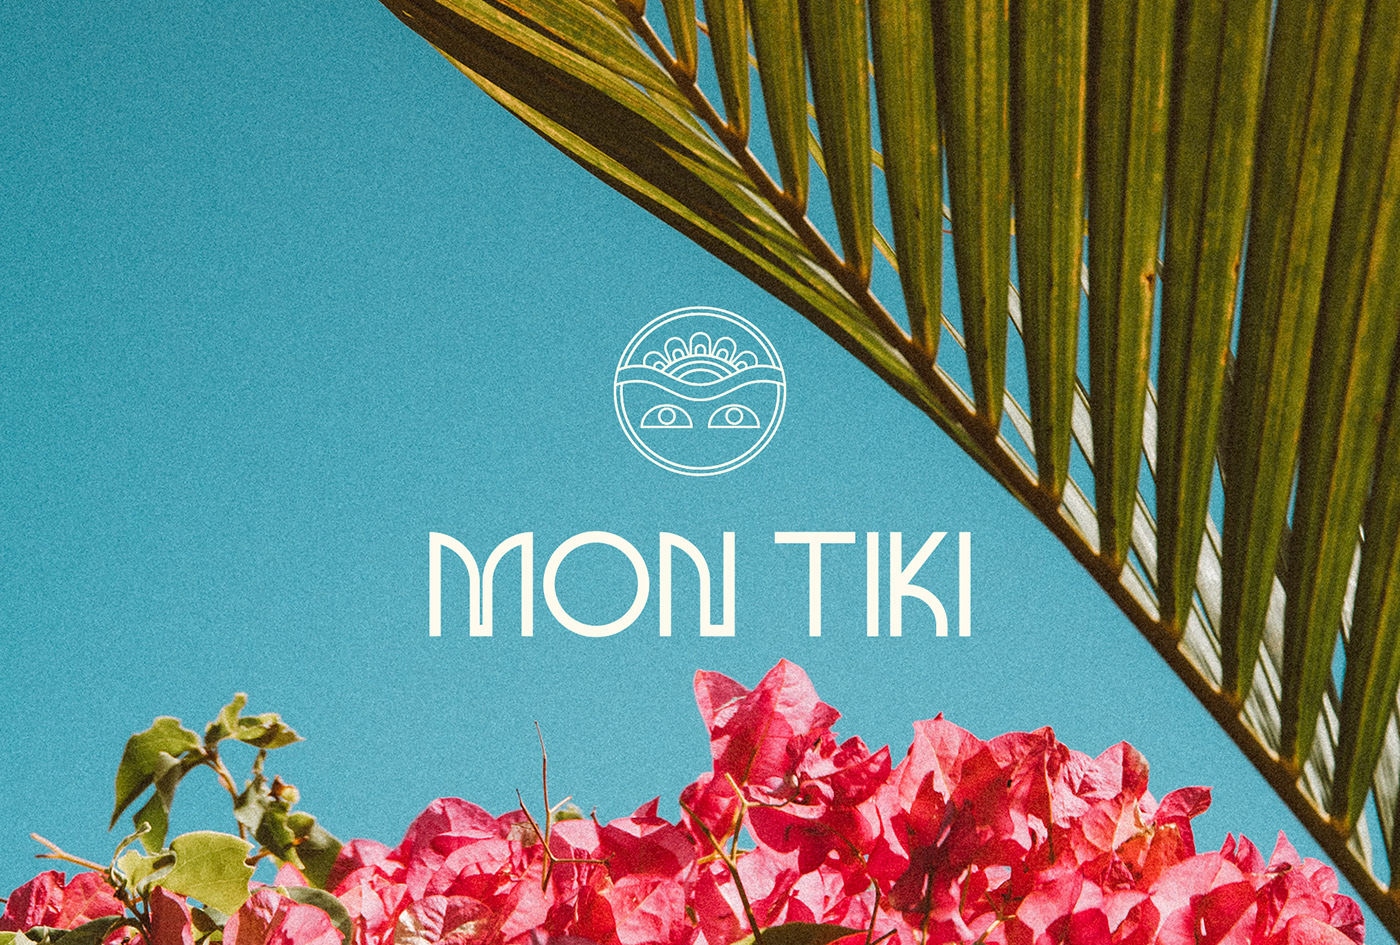 anaisbonder branding  couture identité visuelle logo marque MONTIKI polynésie Tiki typo